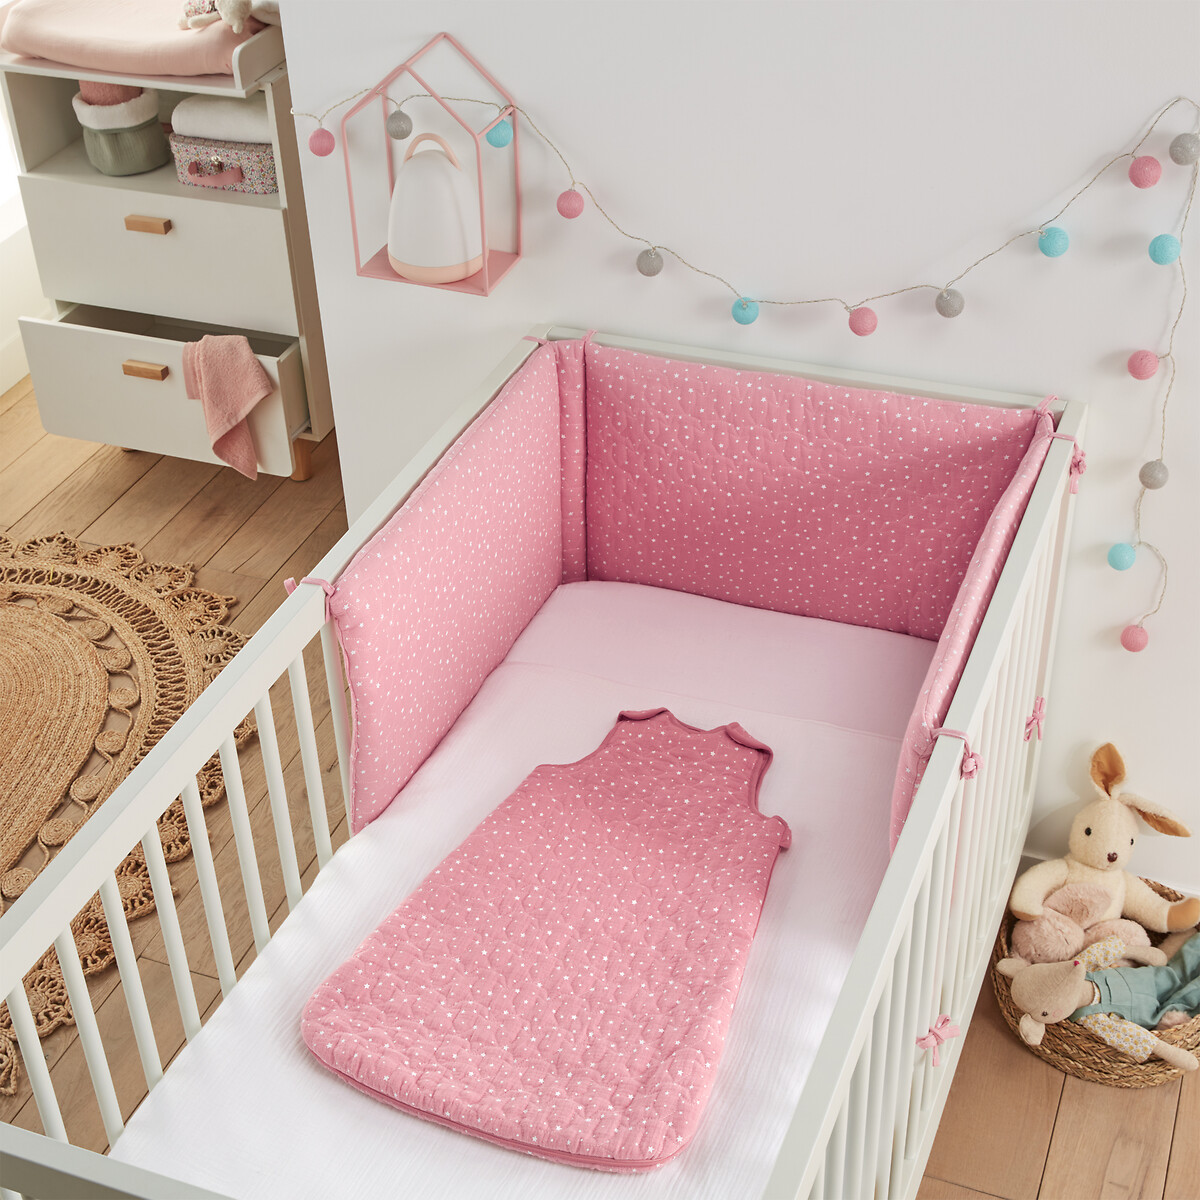 Бампер LaRedoute Для кроватки детской из биохлопковой газовой ткани единый размер розовый - фото 1